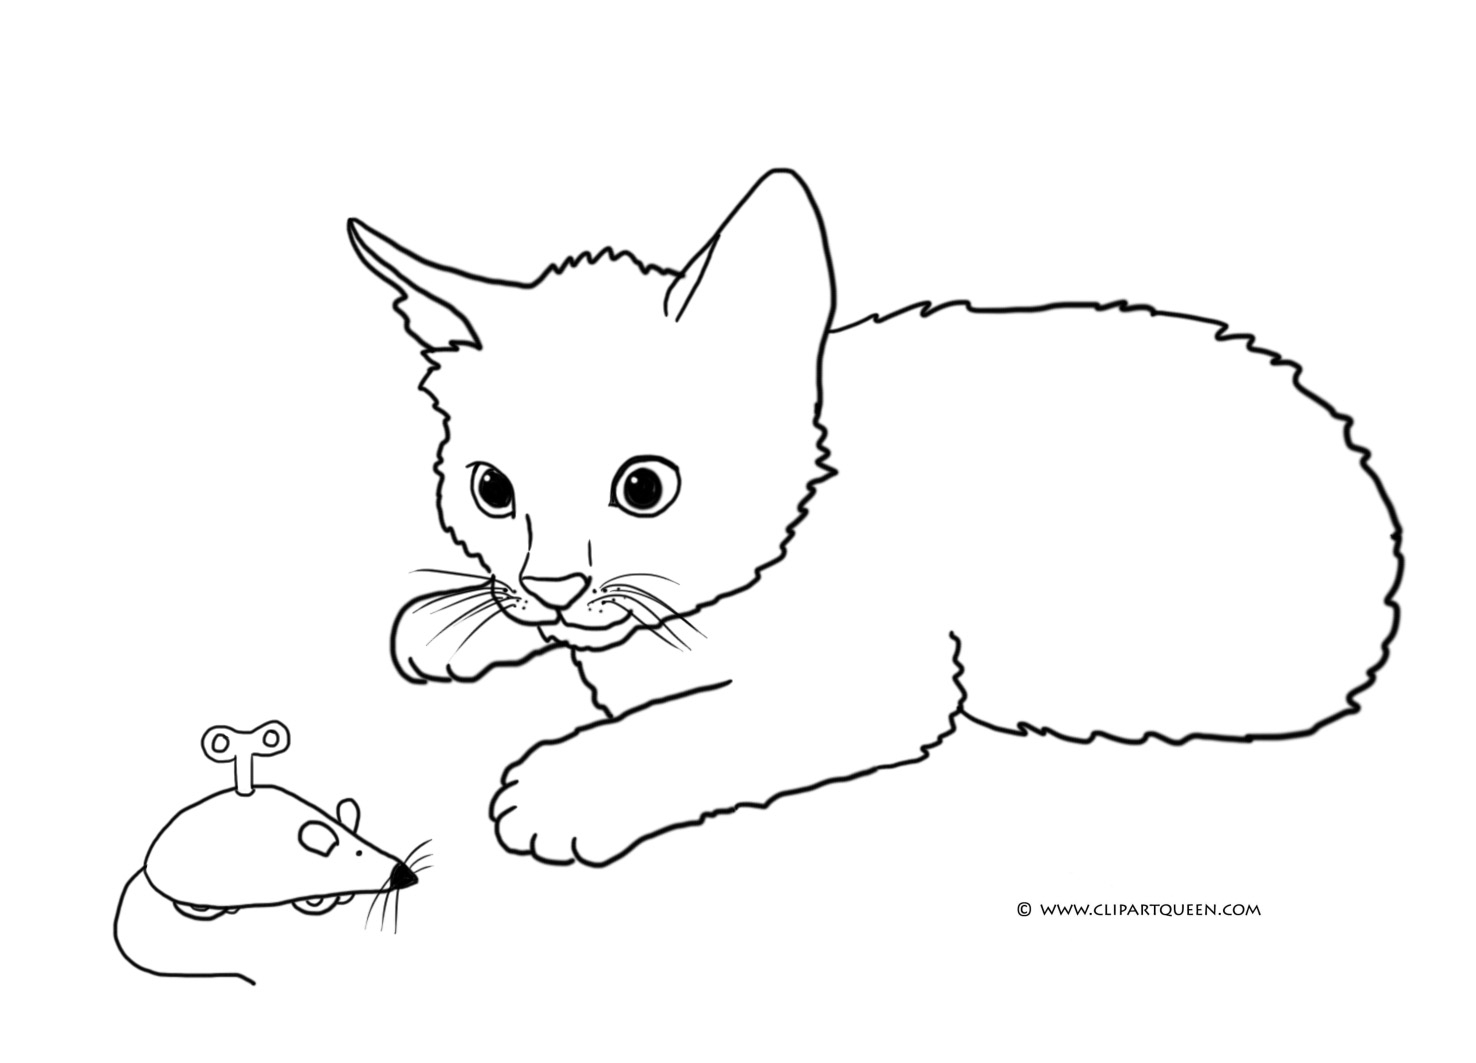 Рисуй и стирай. 3+ Играем в кошки-мышки Раскраска от хобби-маркета 